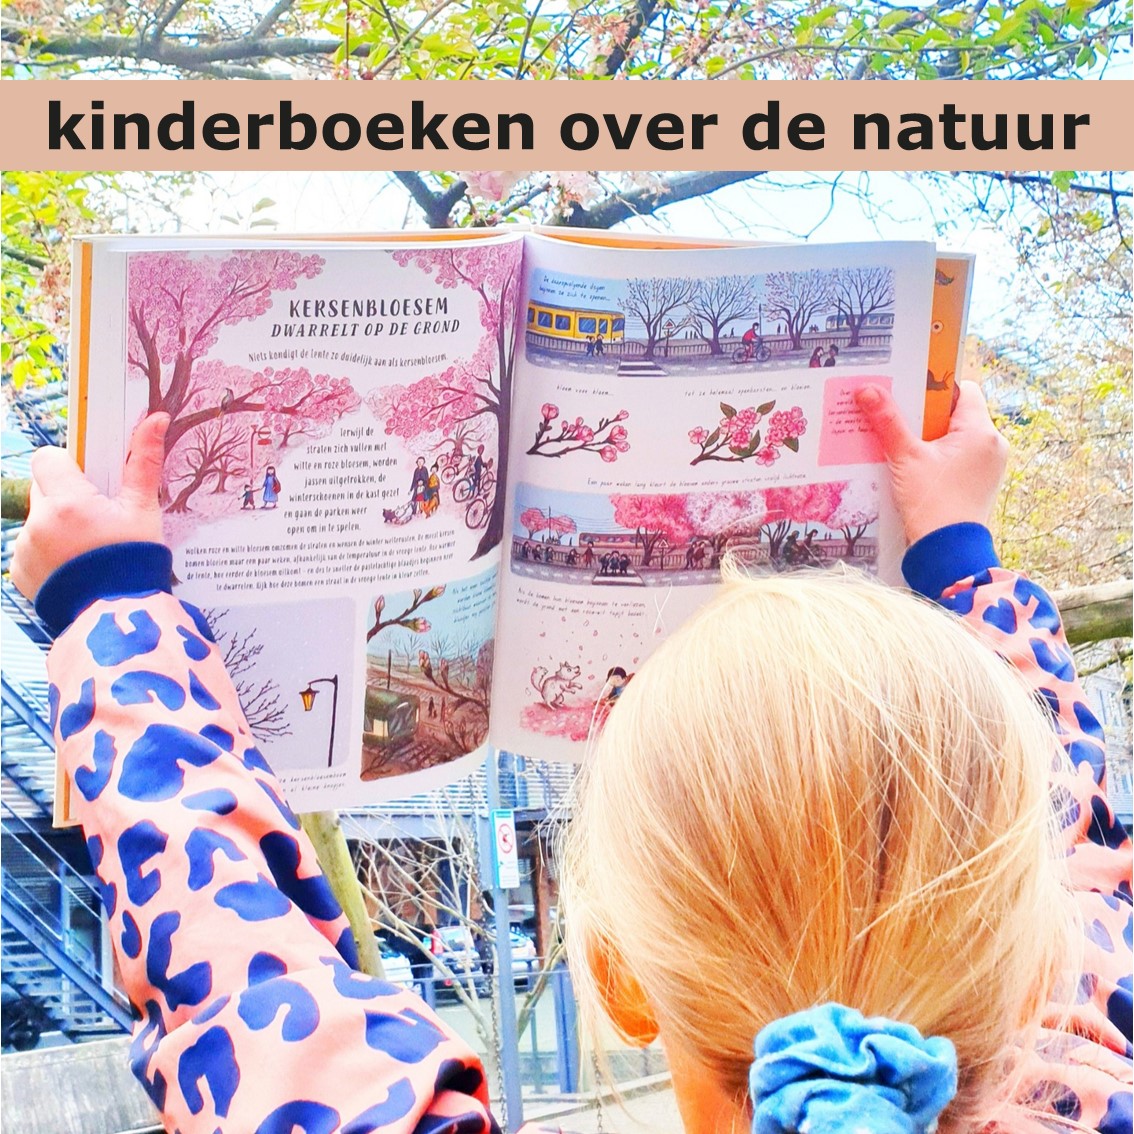 Kinderboeken over de natuur: leuke cadeau ideeën voor kinderen. Op zoek naar leuke cadeau ideeën voor kinderen? Kijk dan eens naar deze kinderboeken over de natuur!